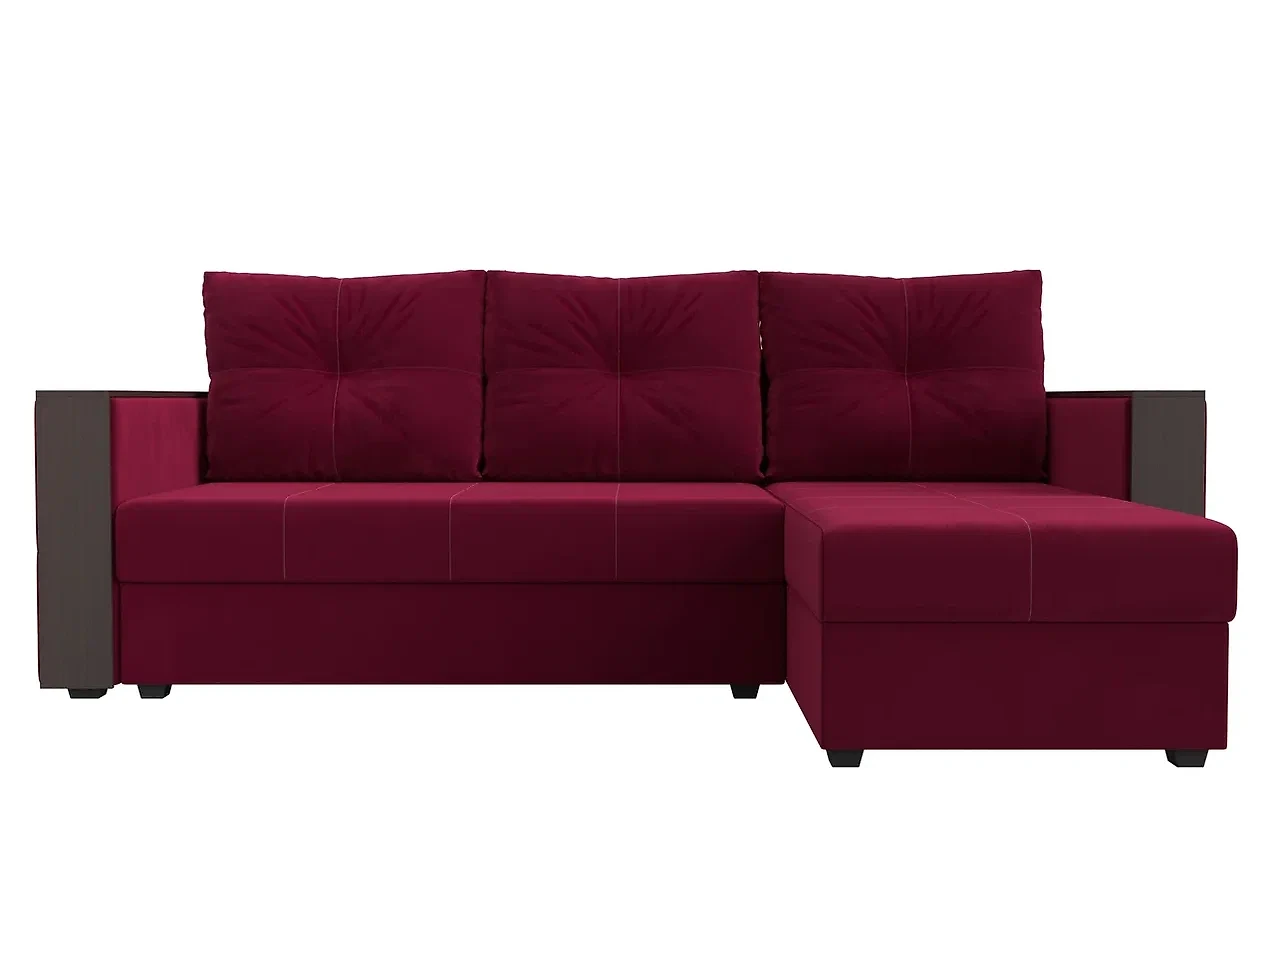 Односпальный угловой диван Валенсия Лайт Дизайн 2